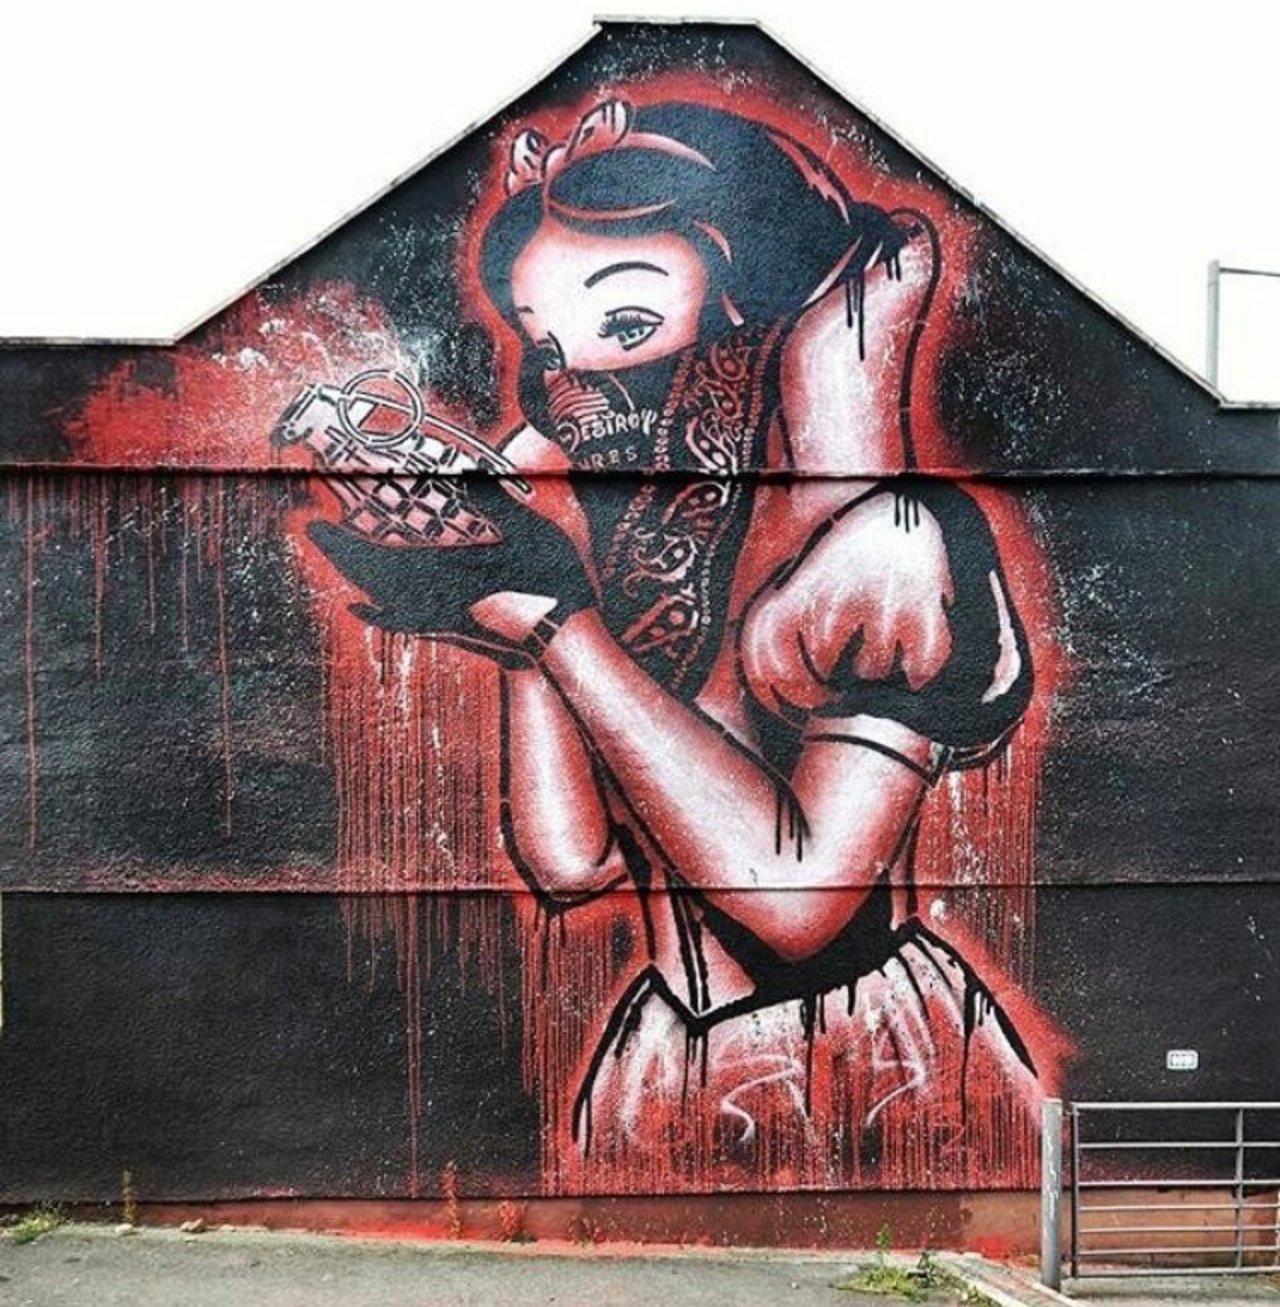 New Street Art by Goin goinart for Bristol Upfest Upfest #art #graffiti #mural #streetart https://t.co/5ATiqXkleh